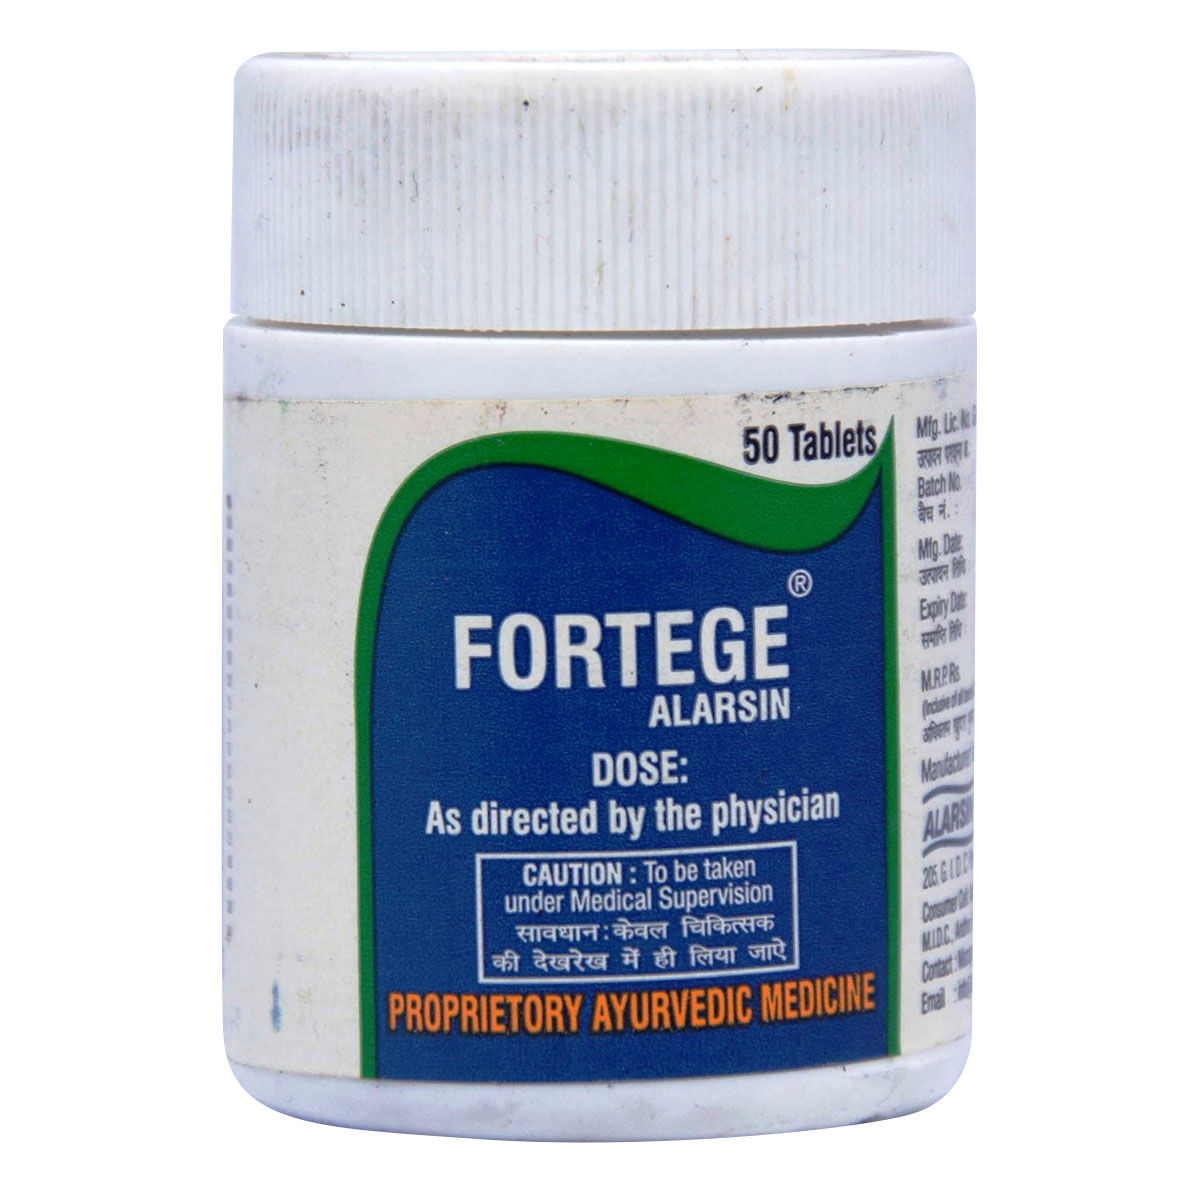 Buy Fortege Alarsin, 50 Tablets Online